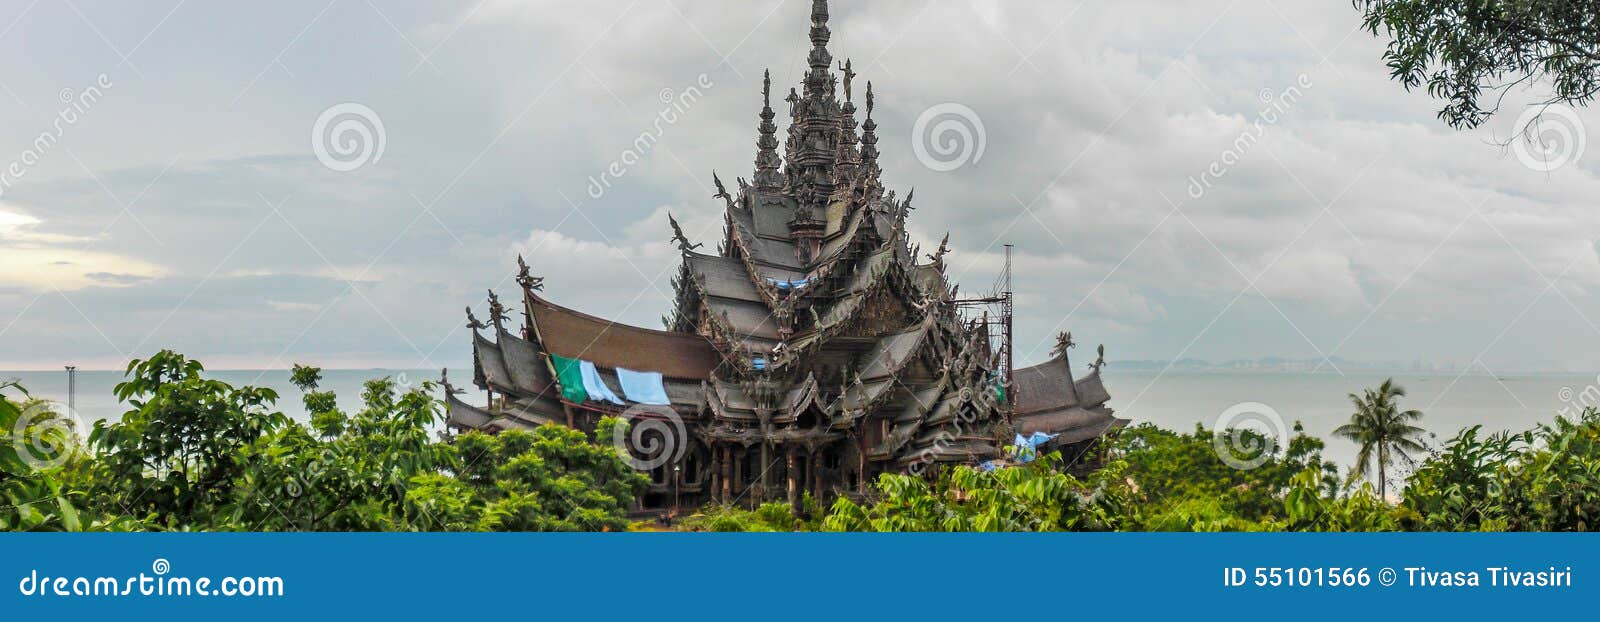 Castello di legno a pattaya. Panorama dell'immagine il mio viaggio in Tailandia